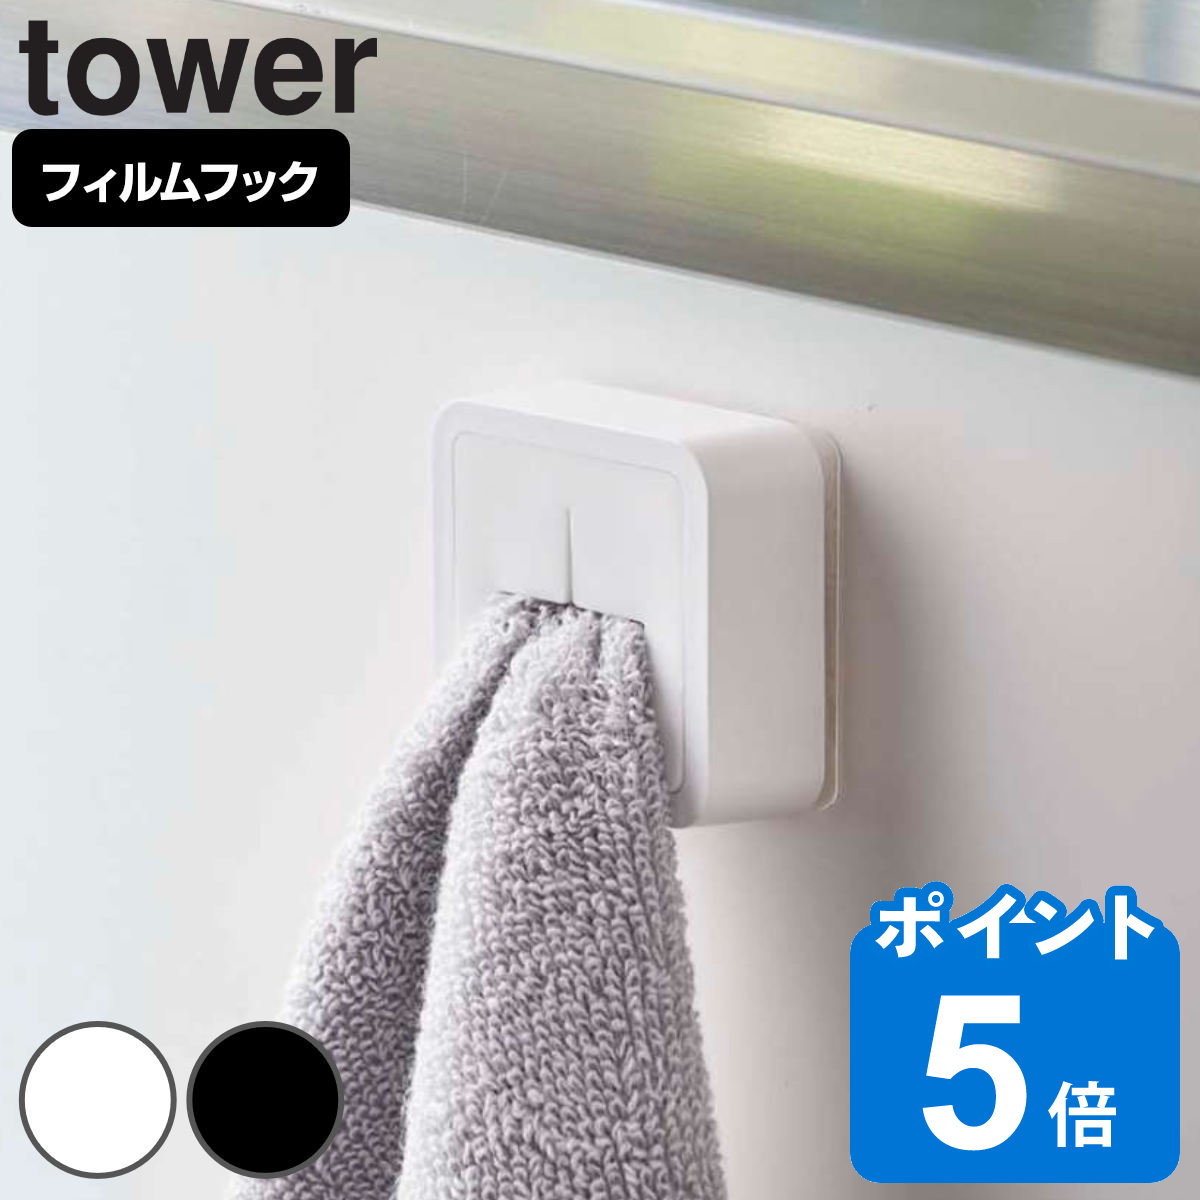 山崎実業 tower フィルムフック タオルホルダー タワー